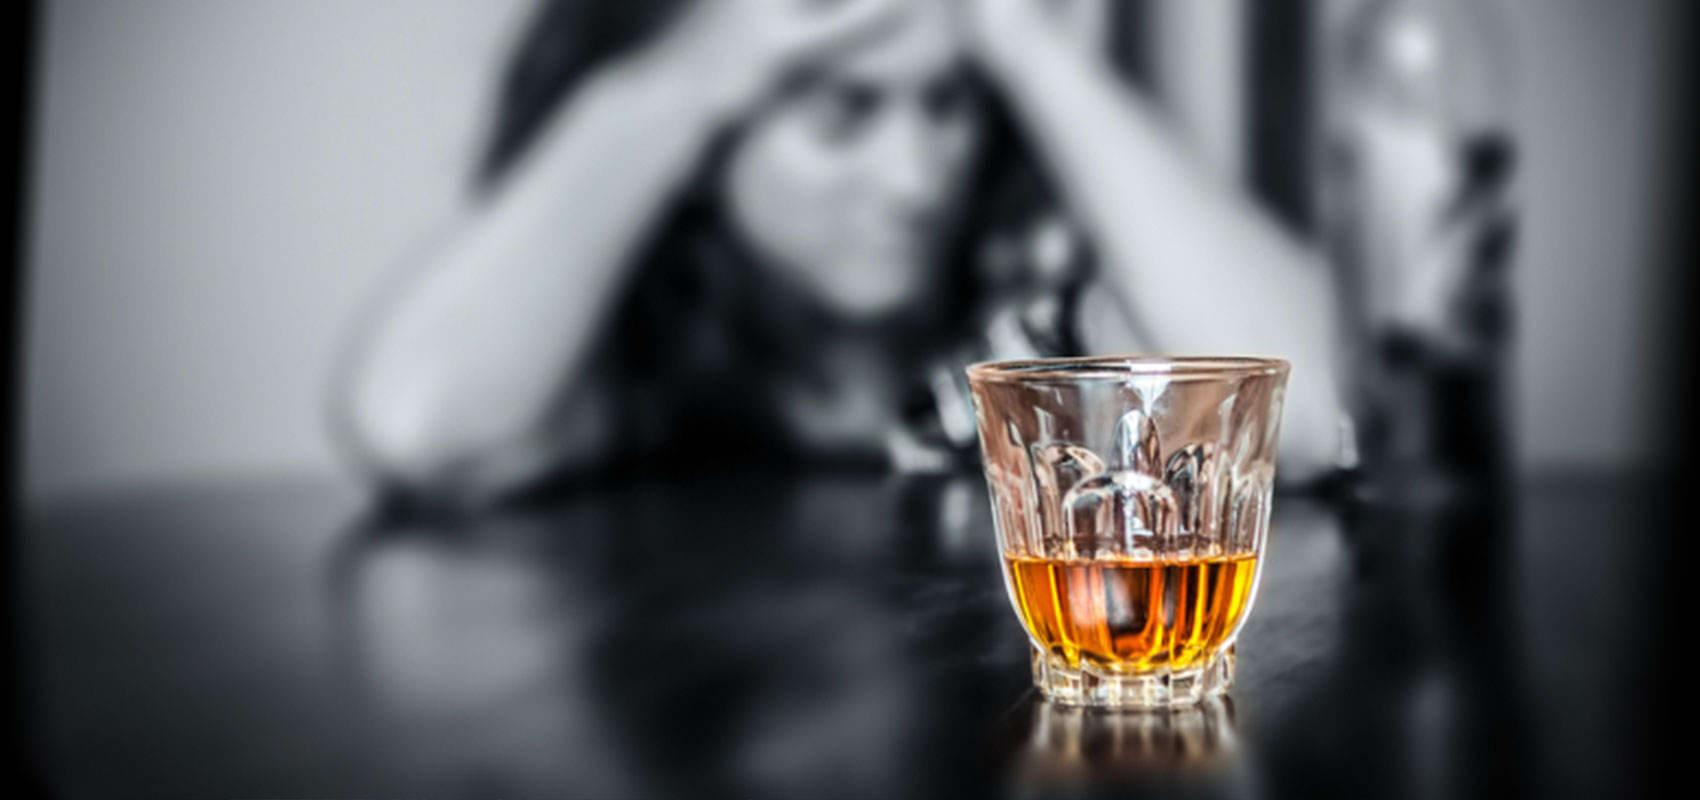 “Σαρώνει” ο αλκοολισμός λόγω κρίσης